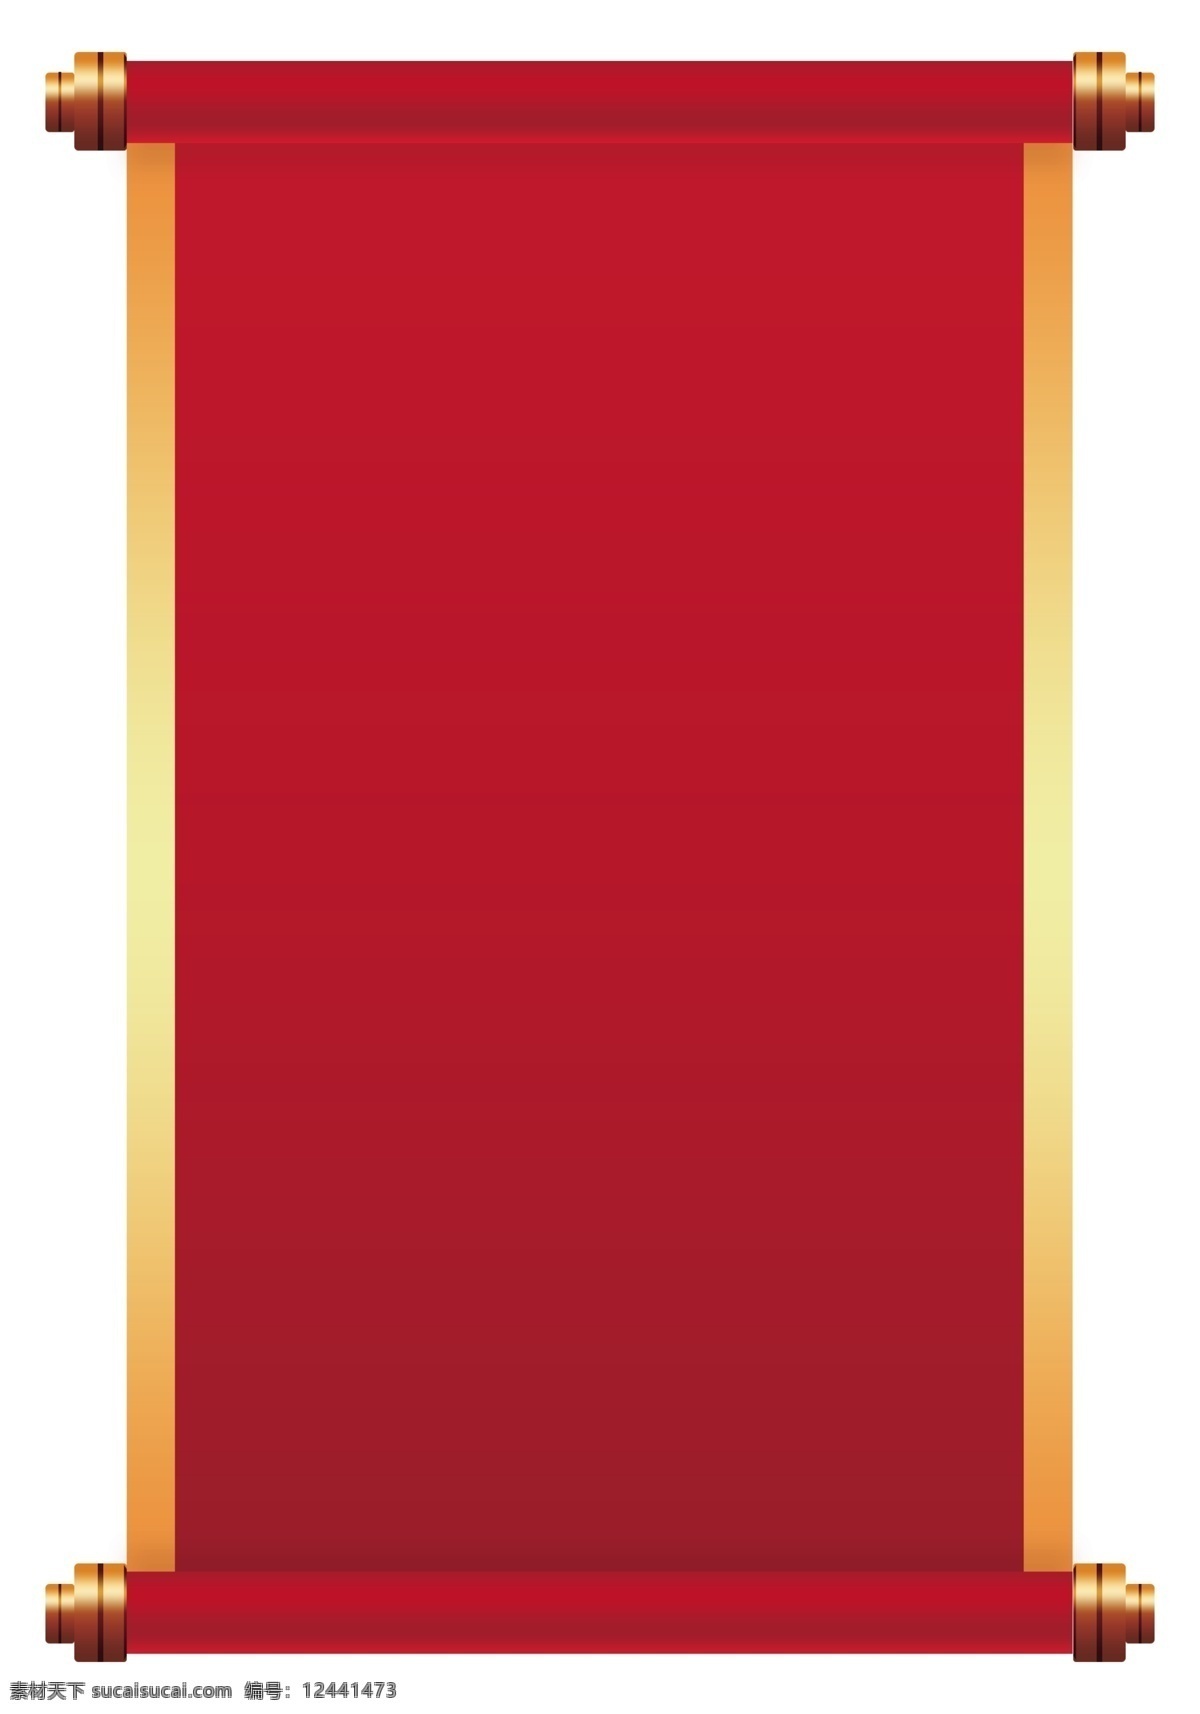 新年 红色 金边 卷轴 免 抠 边框 喜庆 吉祥 横幅 春联 中国风 中式 新中式 红色卷轴 吉祥如意 造型边框 精致边框 传统